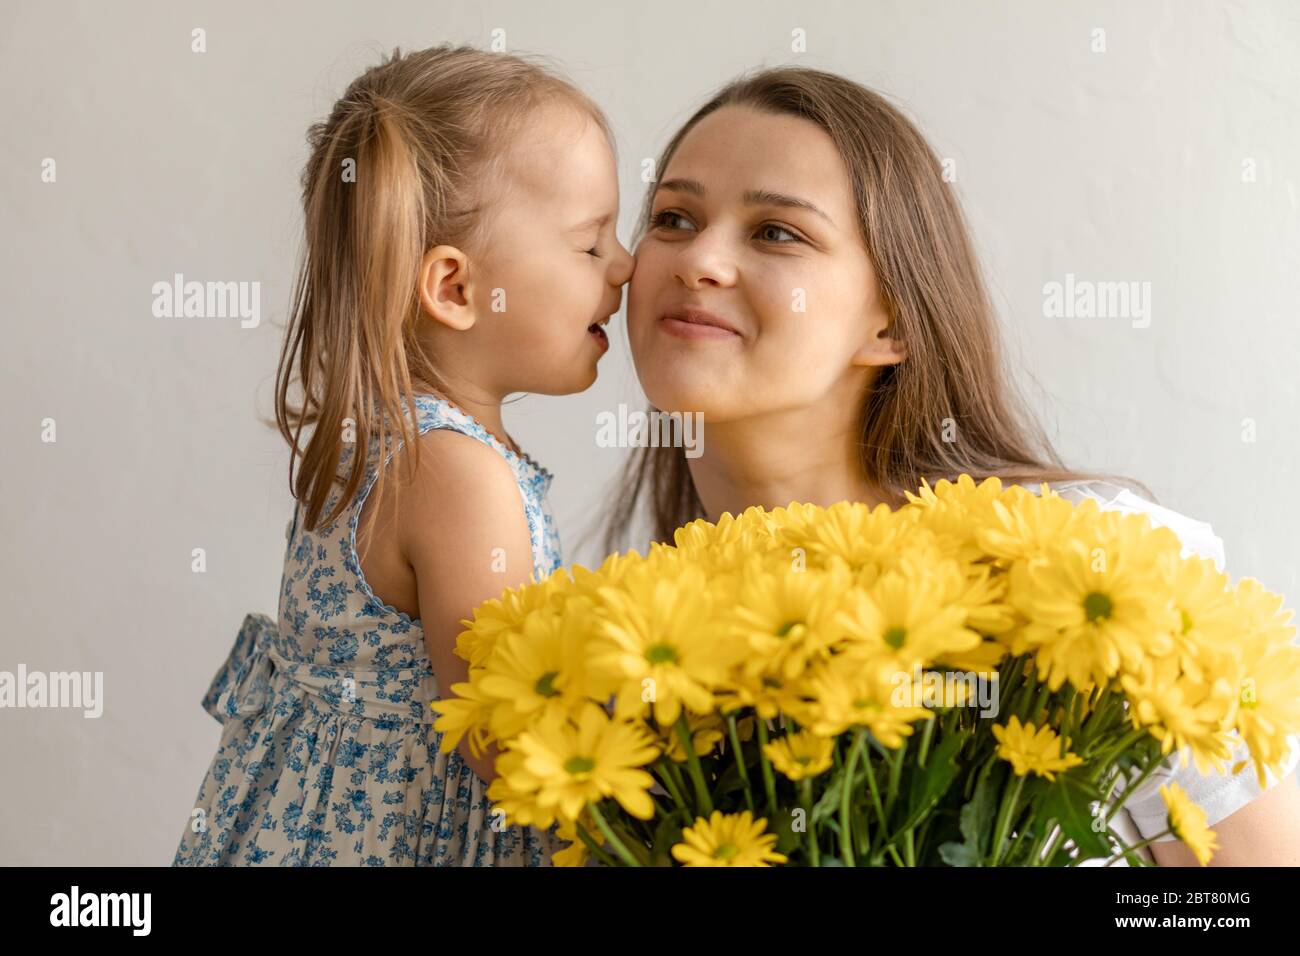 Mutterschaft, Muttertag, Geburtstag, Kindheit, Familienkonzept - close-up kleines Mädchen in der Kleidung gratulieren und geben junge Mutter Bouquet von gelb Stockfoto